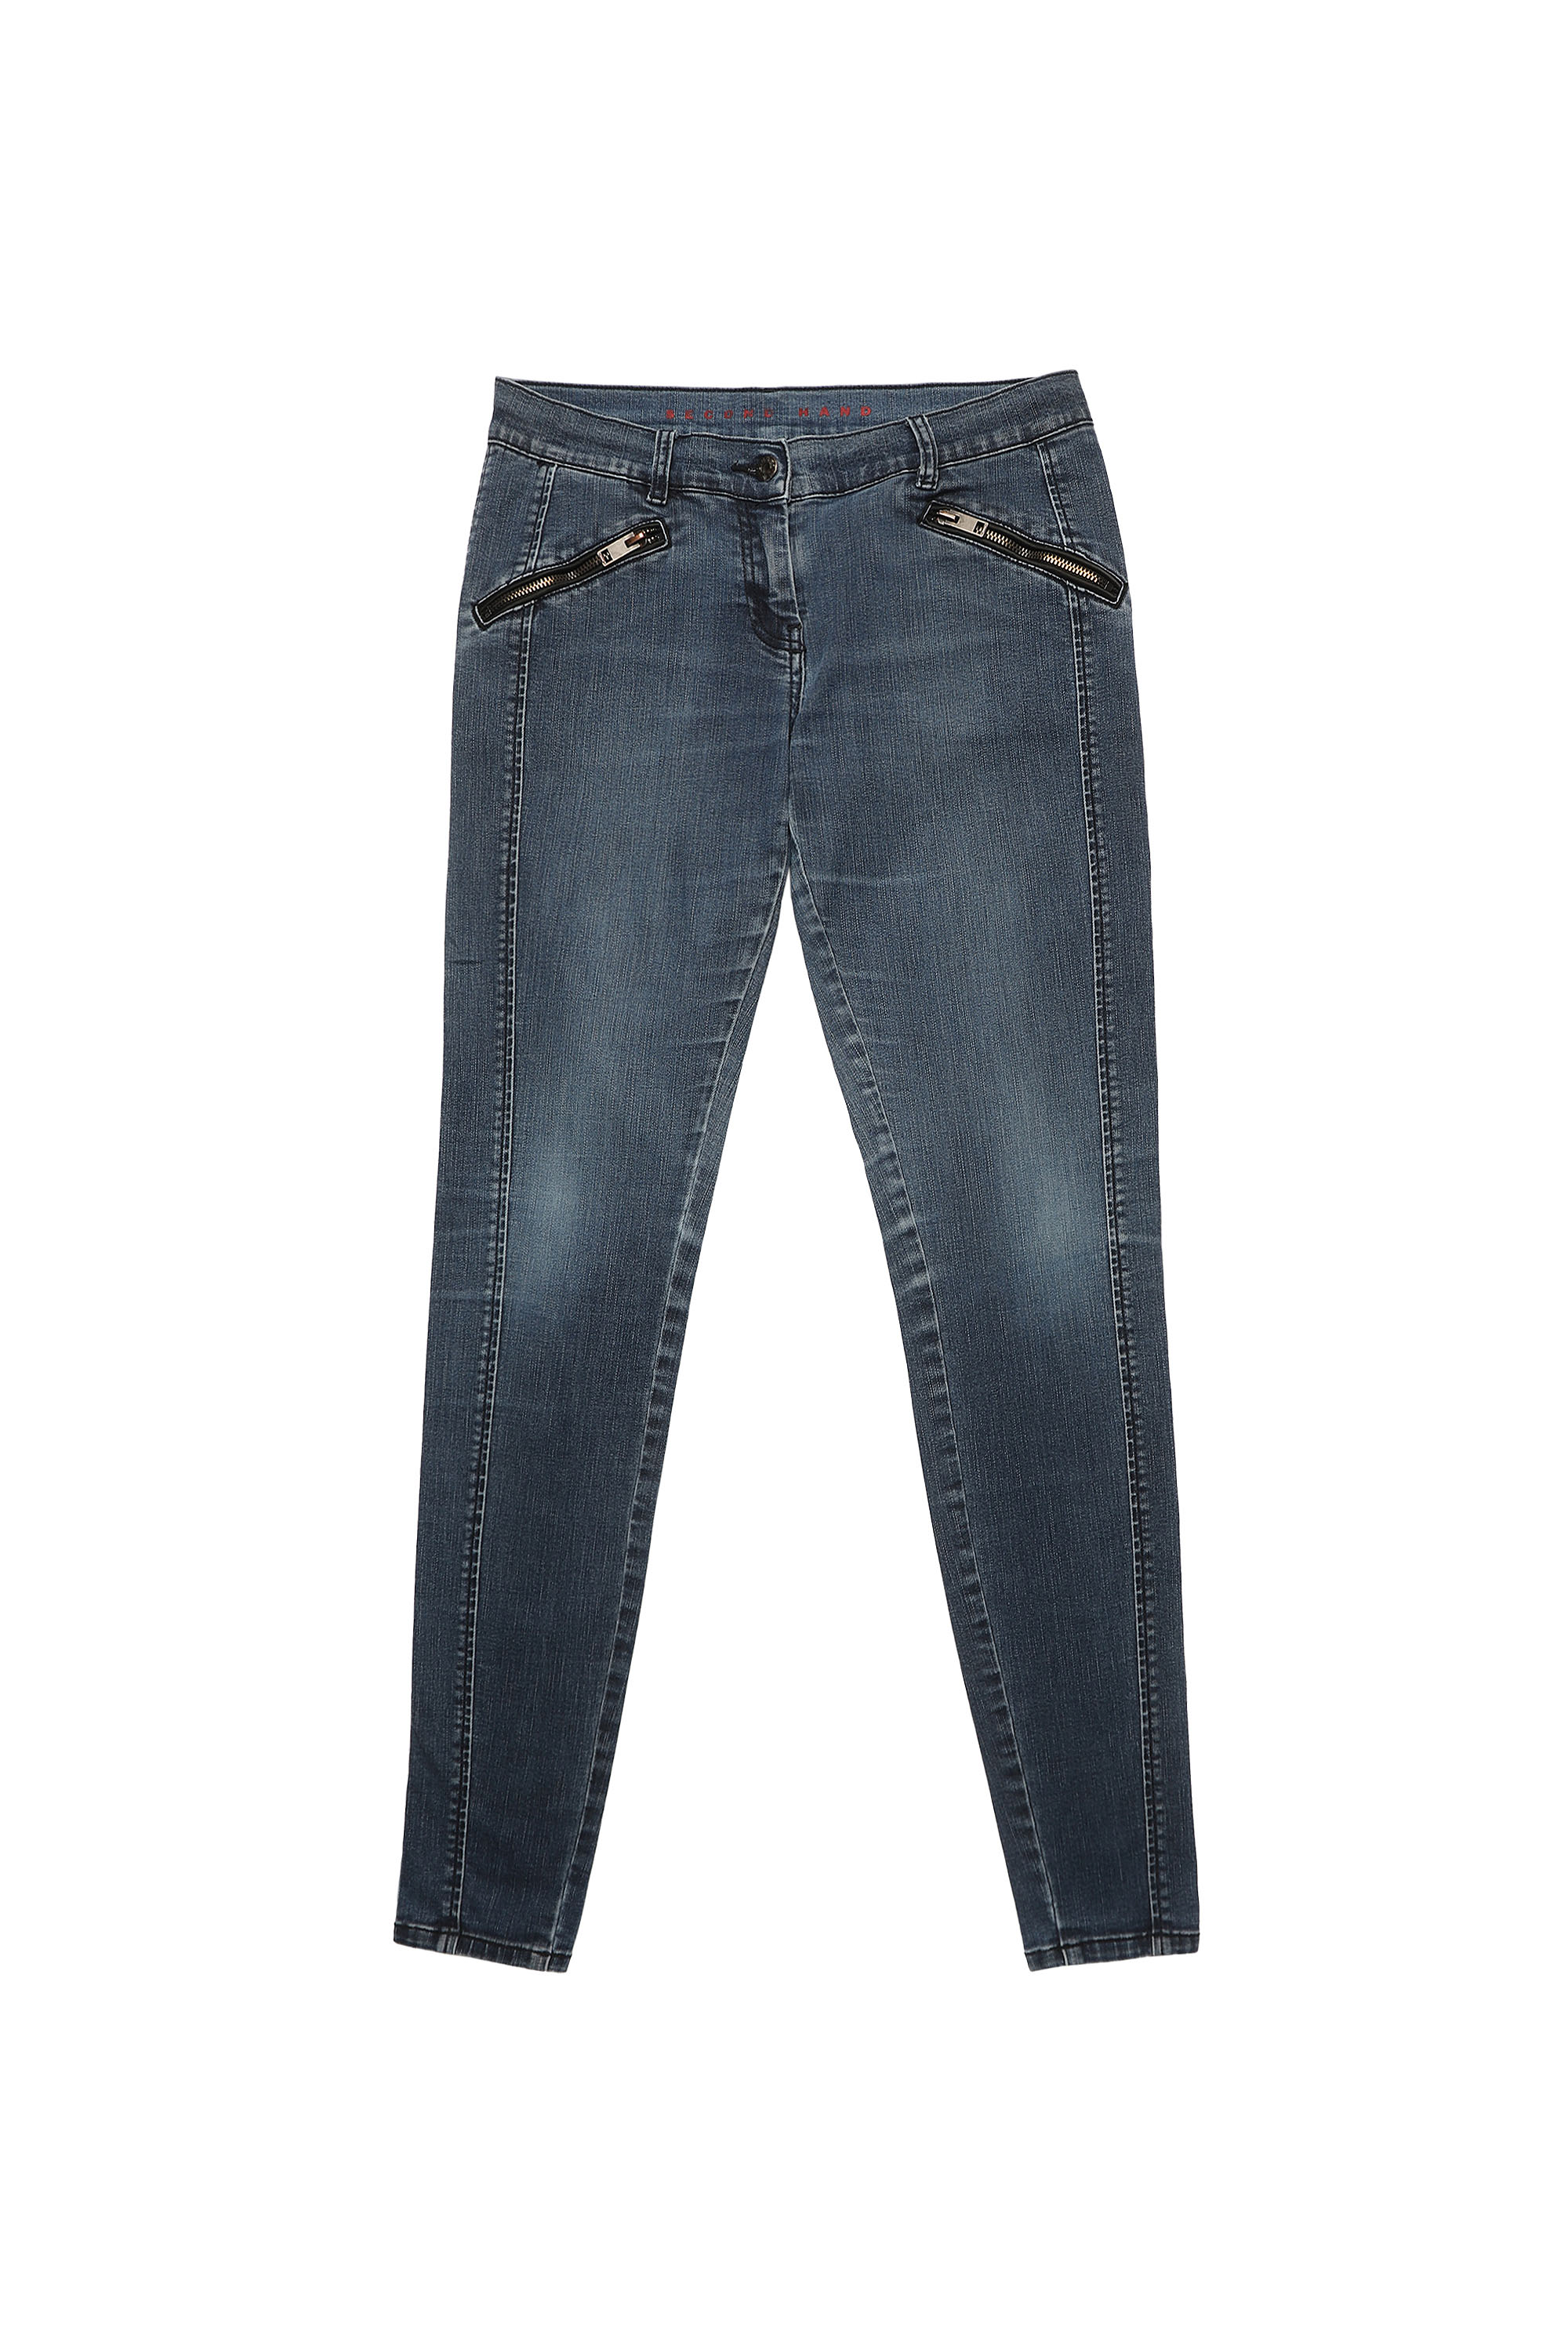 SH DENIM PANT, Medium blue - Jeans